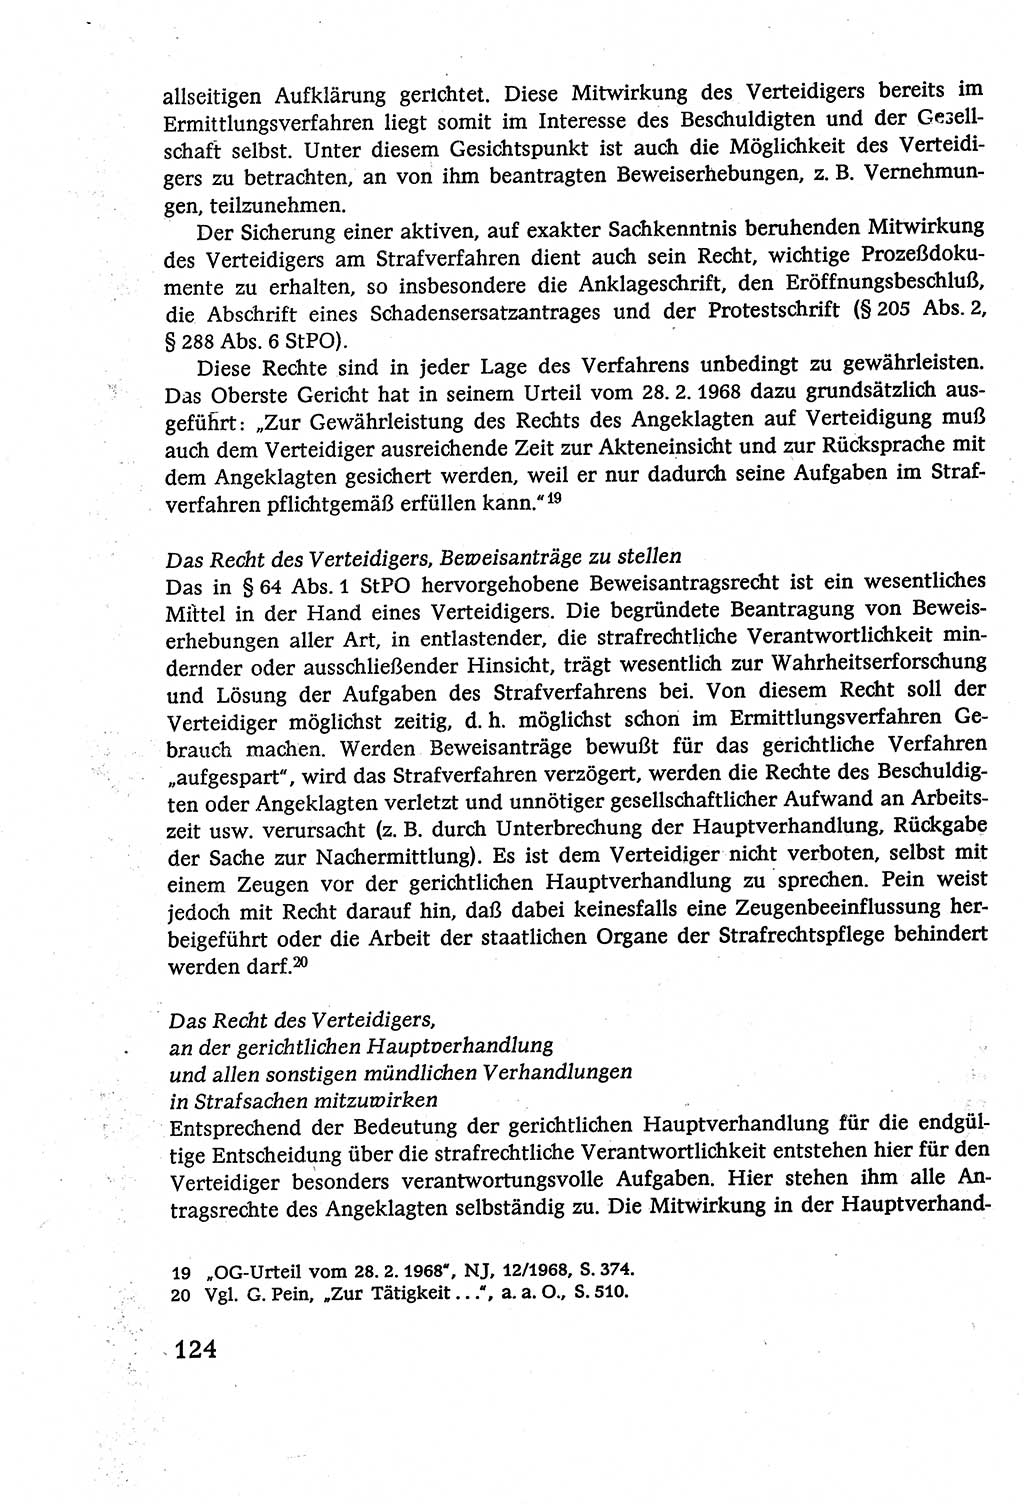 Strafverfahrensrecht [Deutsche Demokratische Republik (DDR)], Lehrbuch 1977, Seite 124 (Strafverf.-R. DDR Lb. 1977, S. 124)